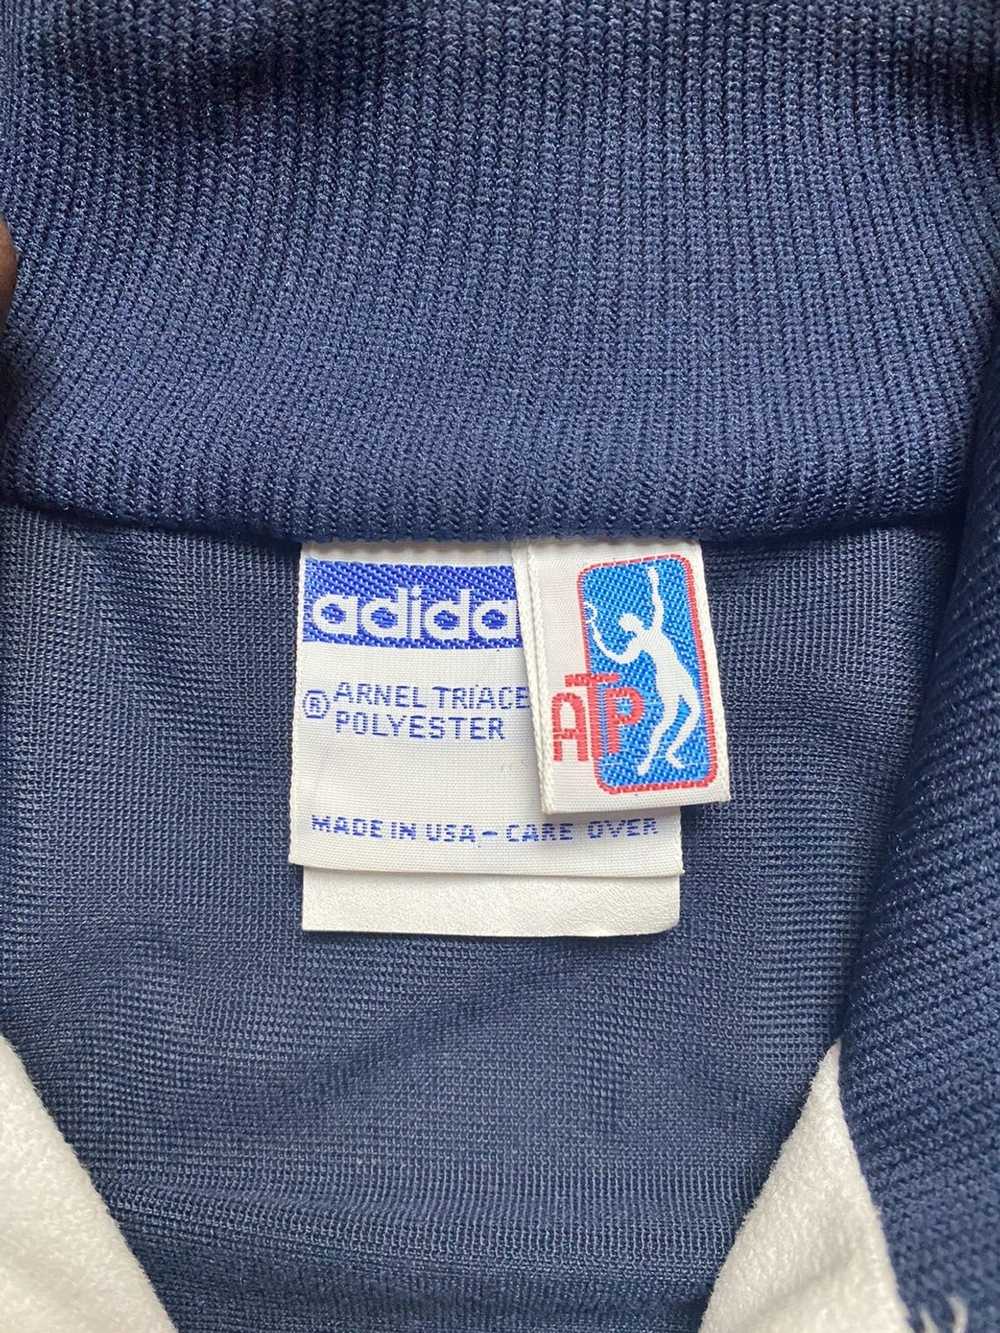 Adidas Vintage Adidas Mens Tennis Jacket - image 3